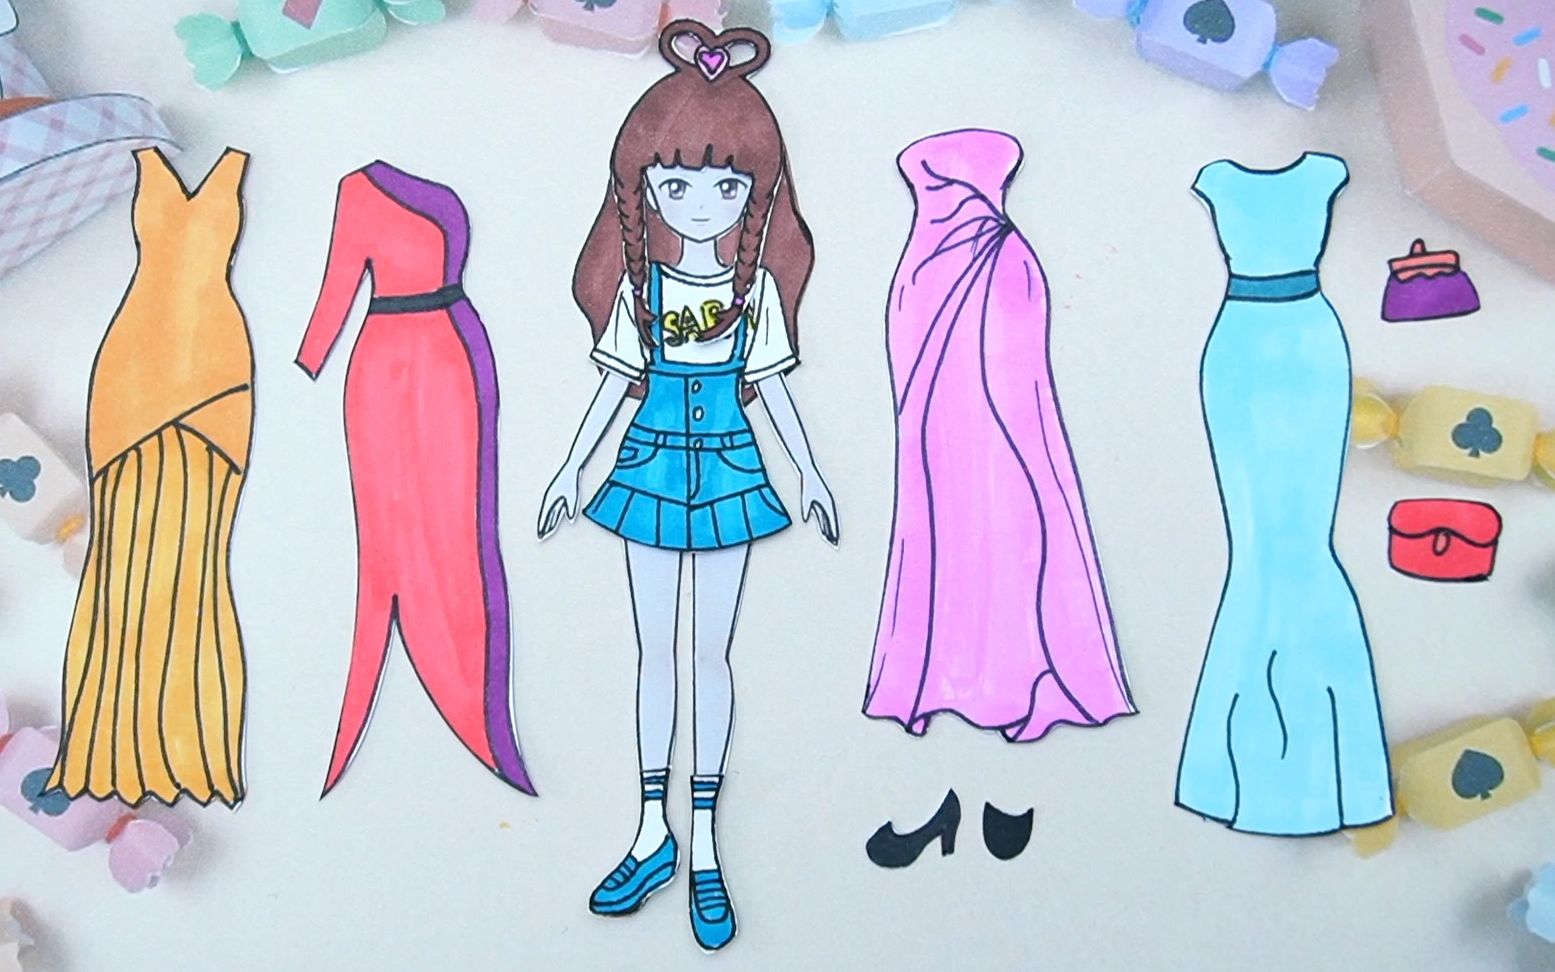 纸娃娃创意手工:给叶罗丽王默制作四件晚礼裙,你喜欢哪件呢